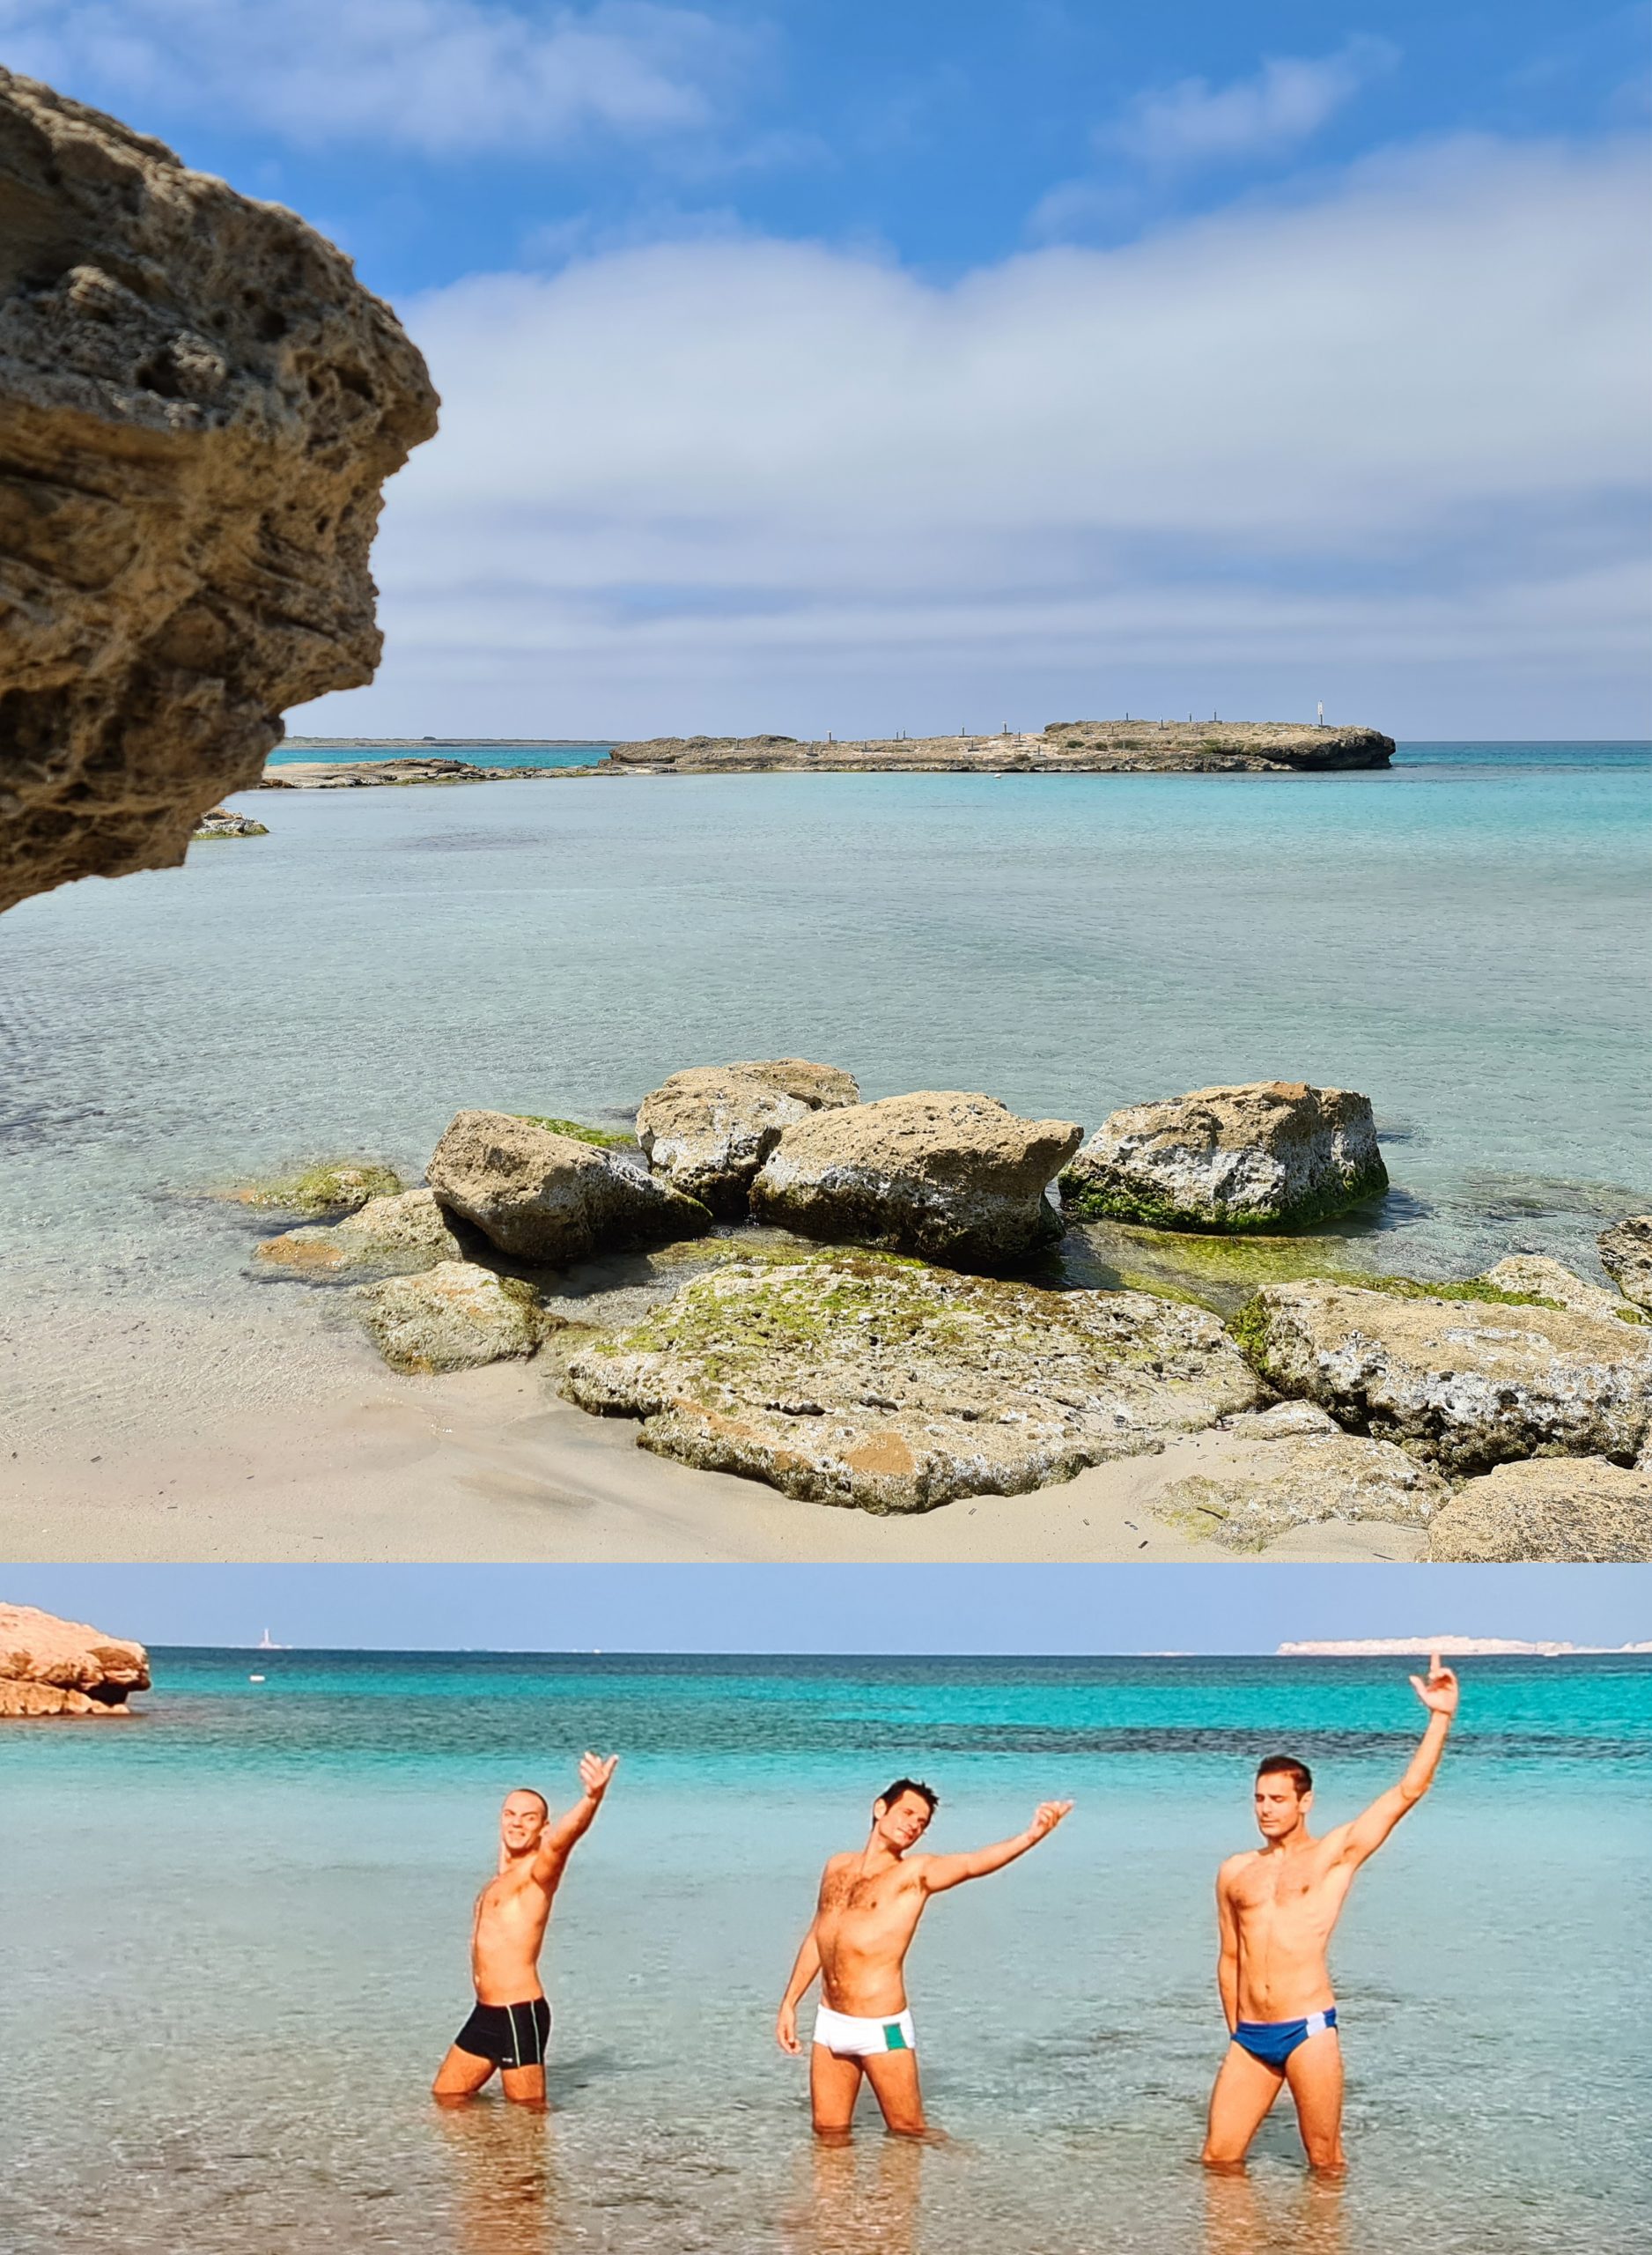 In foto sono sovrapposte due immagini di Punta della Suina, una del film nella scena dove ci sono i tre ragazzi gay che ballano e l'altra che ho fotografato io.